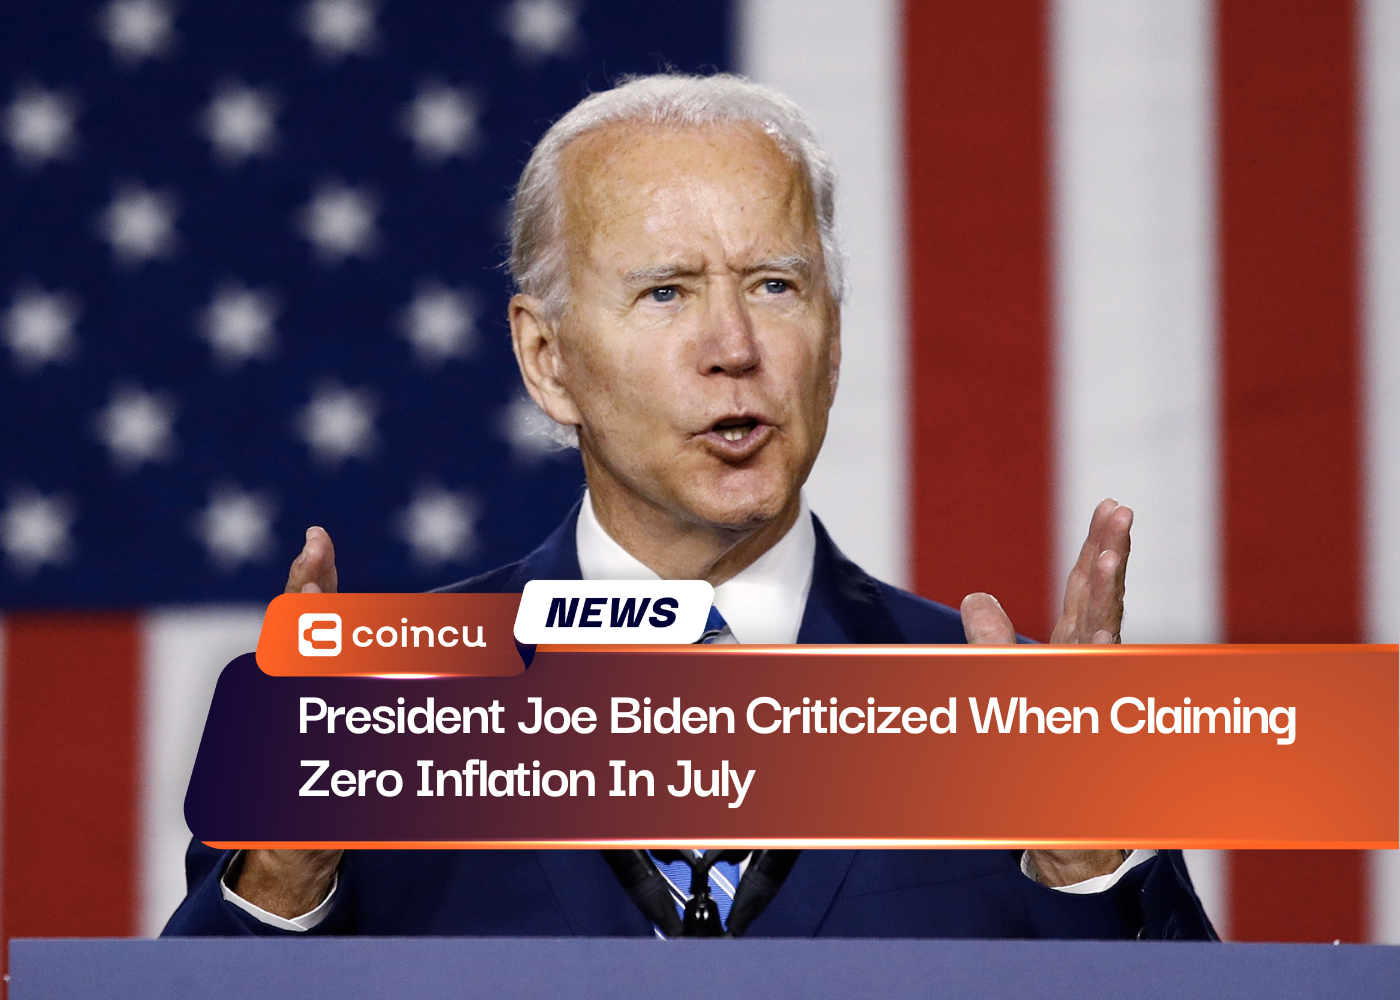 Le président Joe Biden critiqué pour avoir revendiqué une inflation nulle en juillet